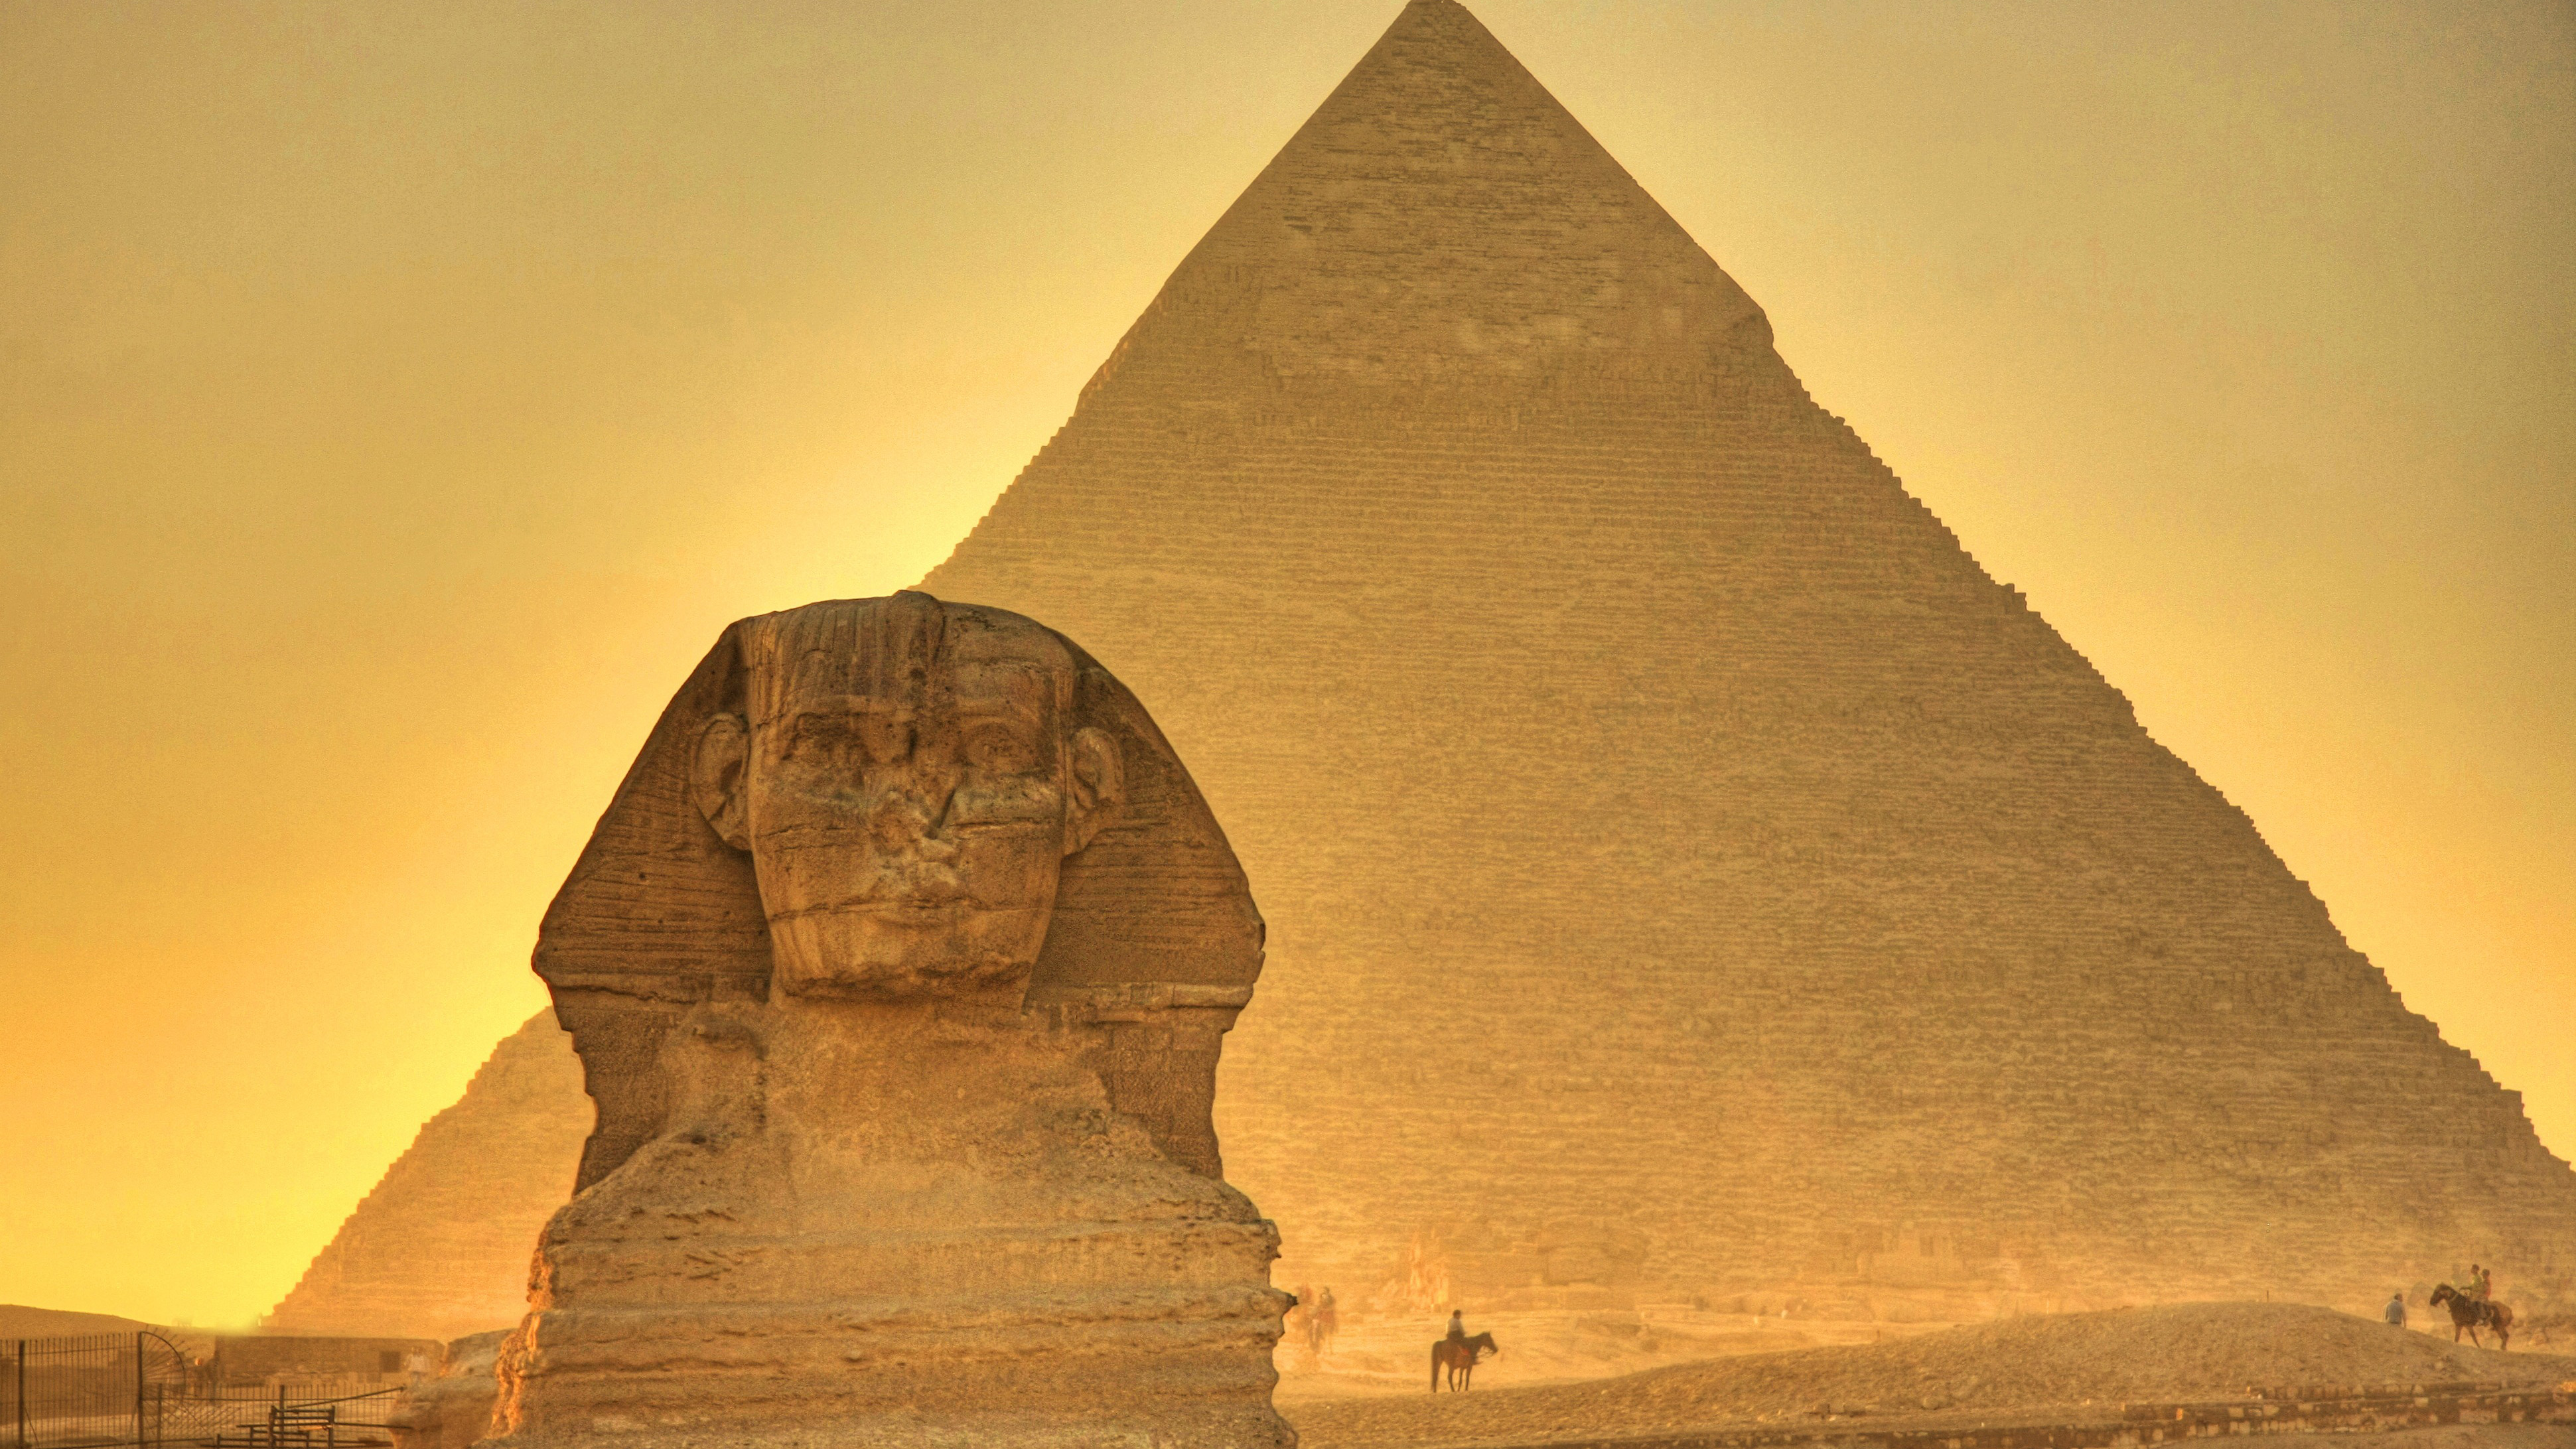 Нажмите на тот который создан людьми. Пирамида Хуфу Египет. Пирамида Хеопса. Сфинкс Хеопса. Большой сфинкс и пирамида Хеопса.